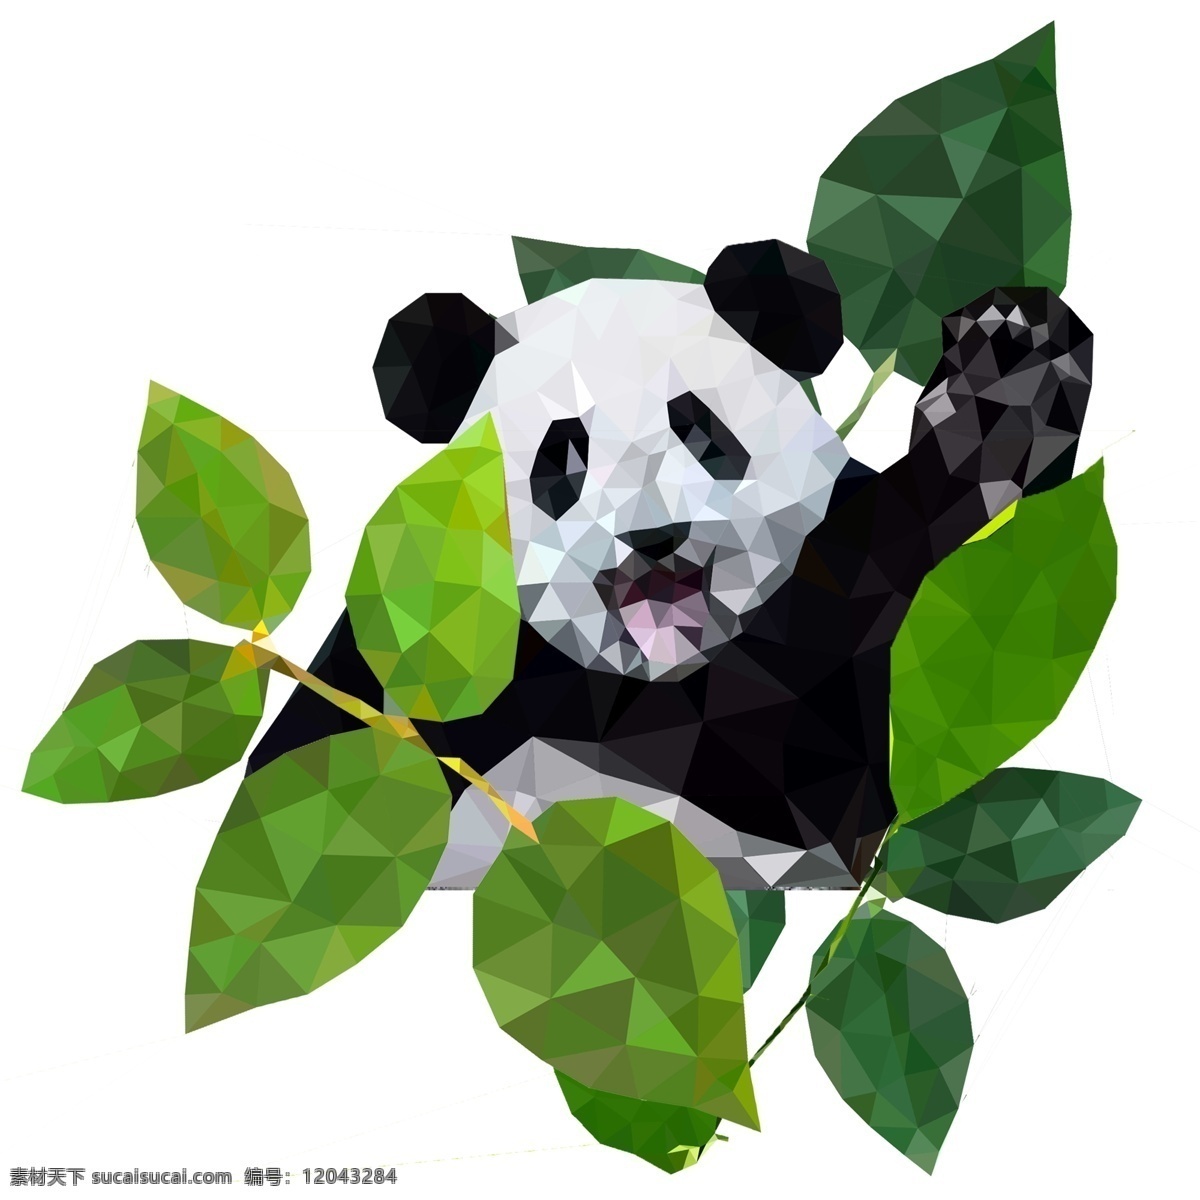 菱角 渐 明 可爱 大熊猫 树叶 菱角渐明 绿色 熊猫 动物 濒危 大自然 保护 爱护 守护 自然 环保 环境 生态 熊 国宝